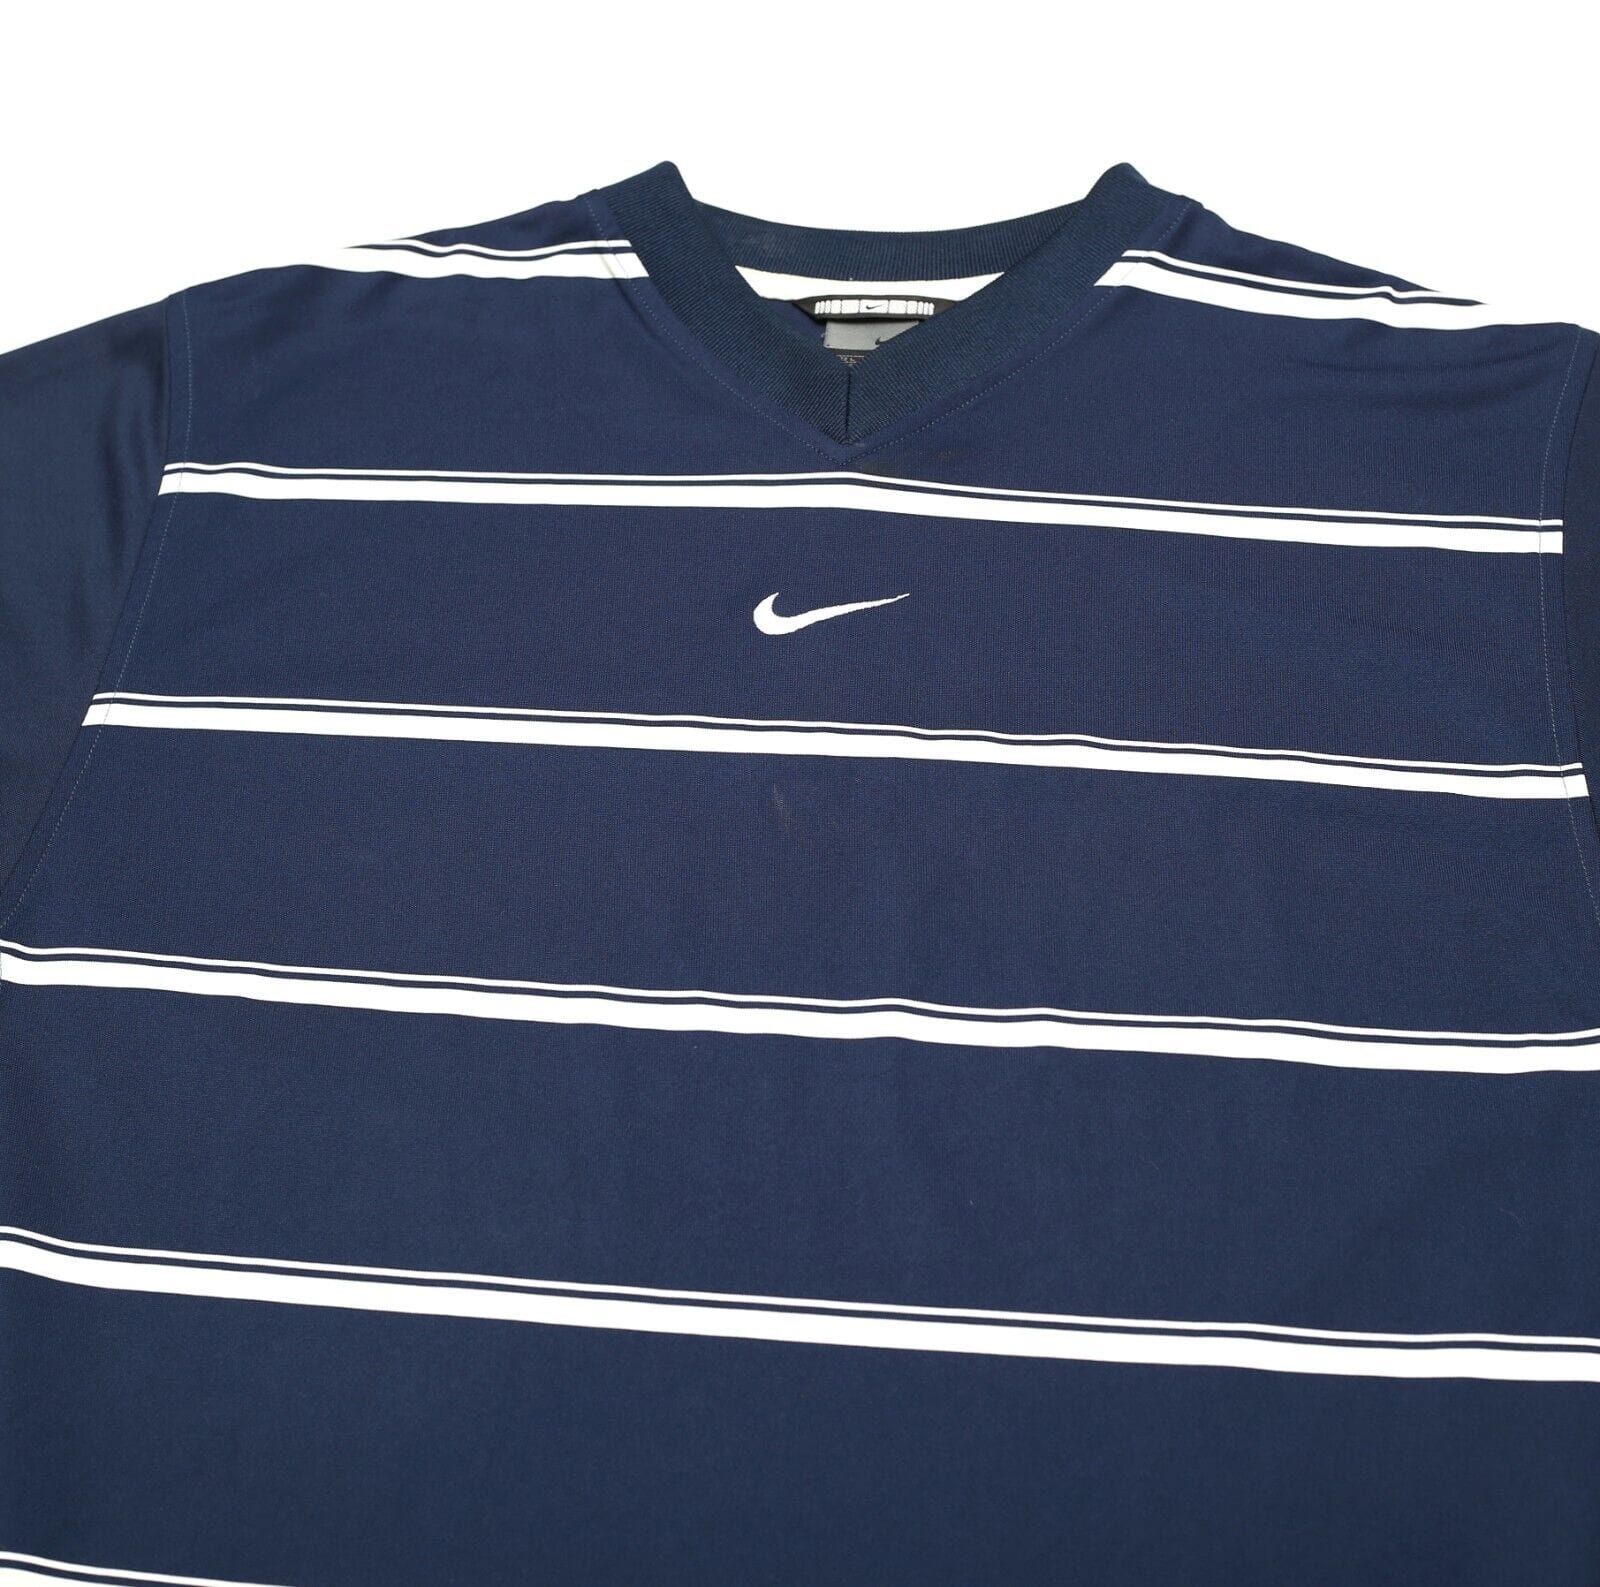 2002/03 LEEDS UNITED Vintage Nike Football Training Shirt (L)